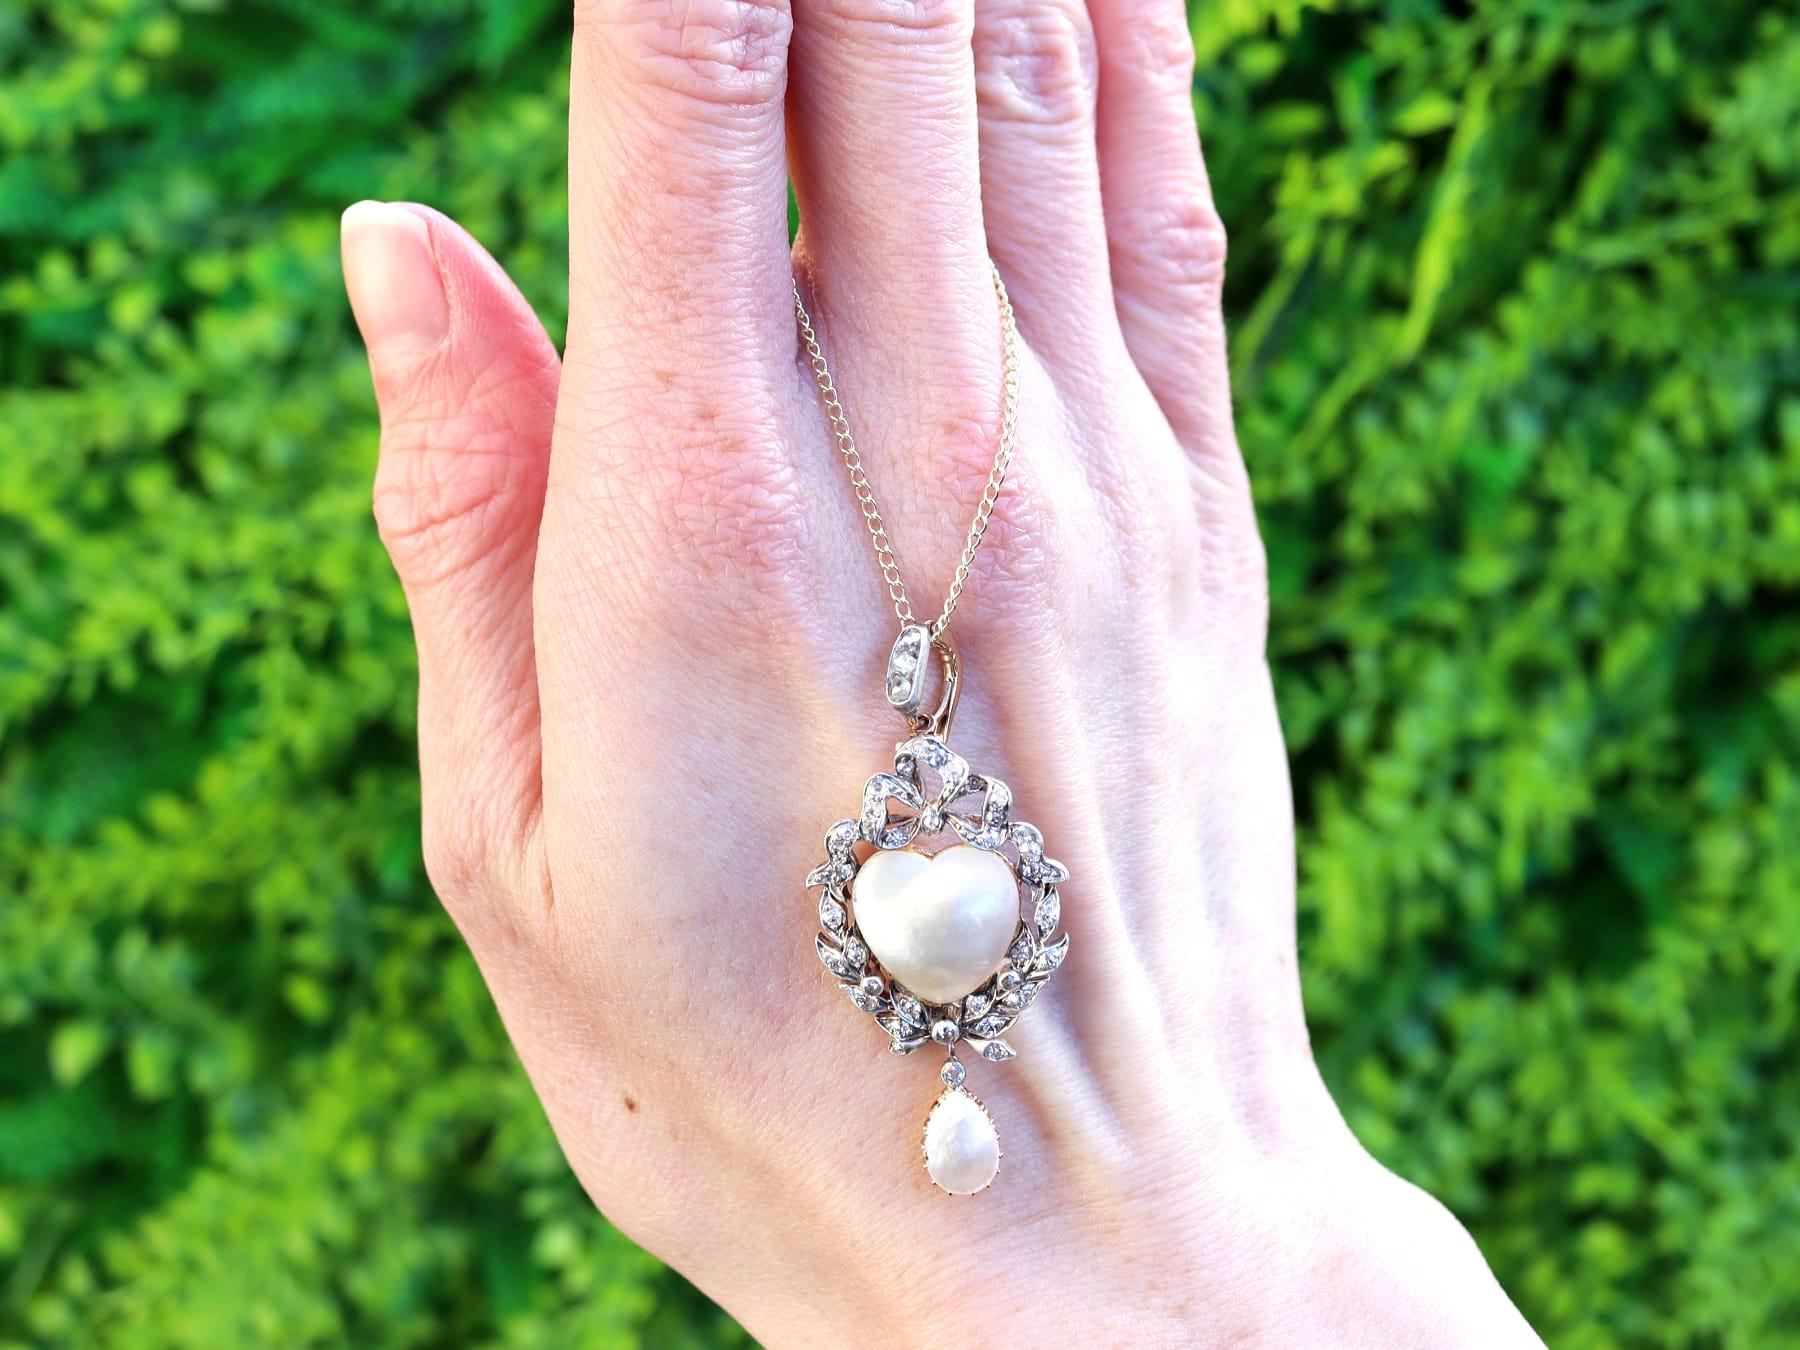 Un superbe pendentif en or jaune 9 carats et argent, composé d'une perle vésiculeuse victorienne ancienne et d'un diamant de 0,42 carat, qui fait partie de nos collections de bijoux en perles.

Ce pendentif en forme de perle ancienne, magnifique,